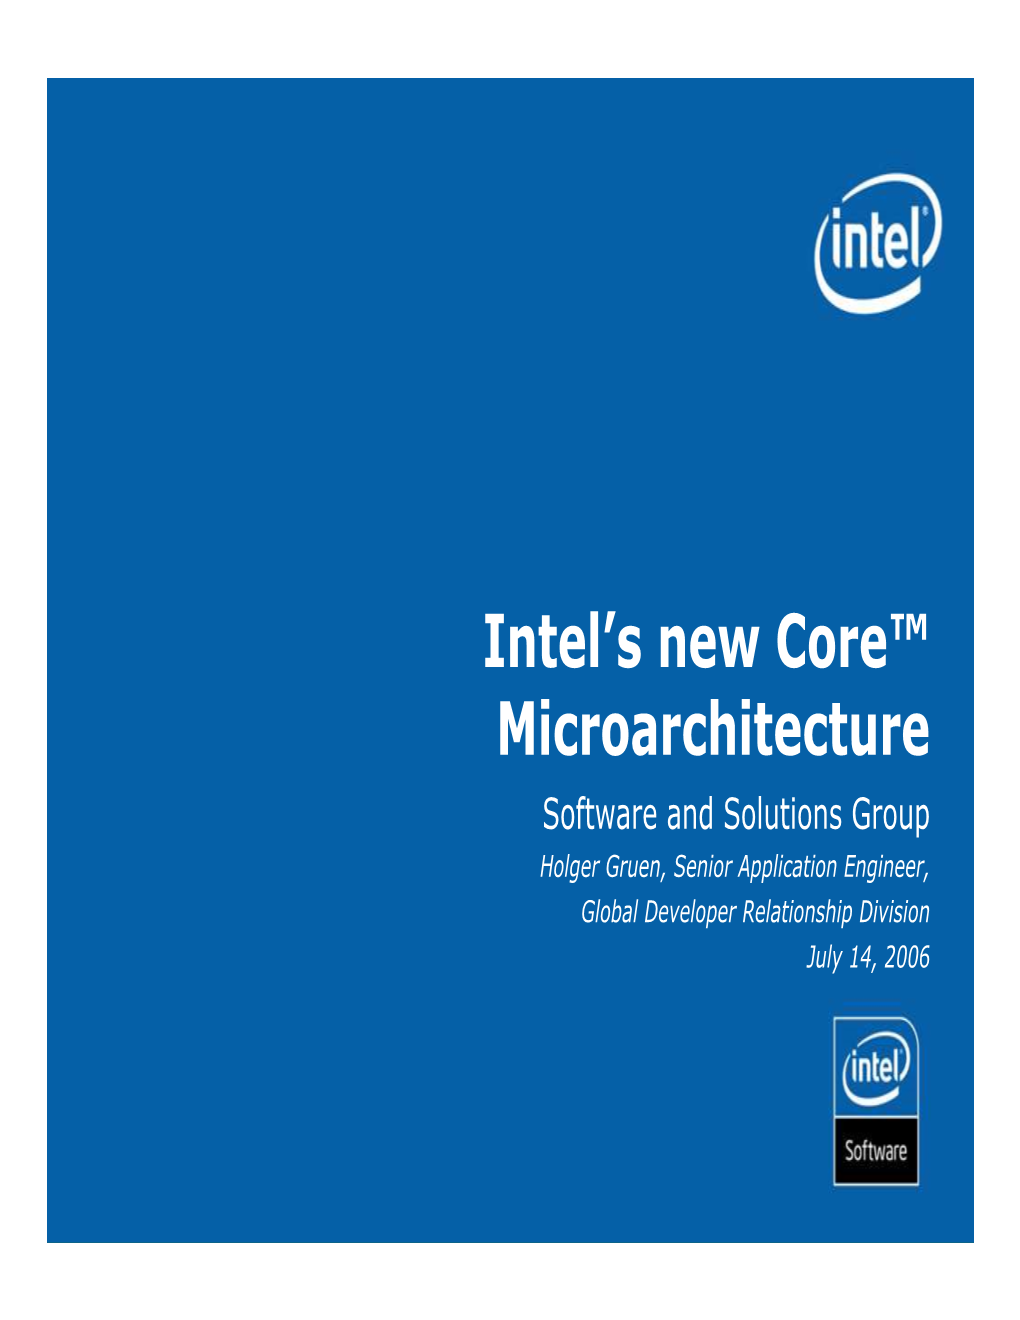 Intel's New Core™ Microarchitecture